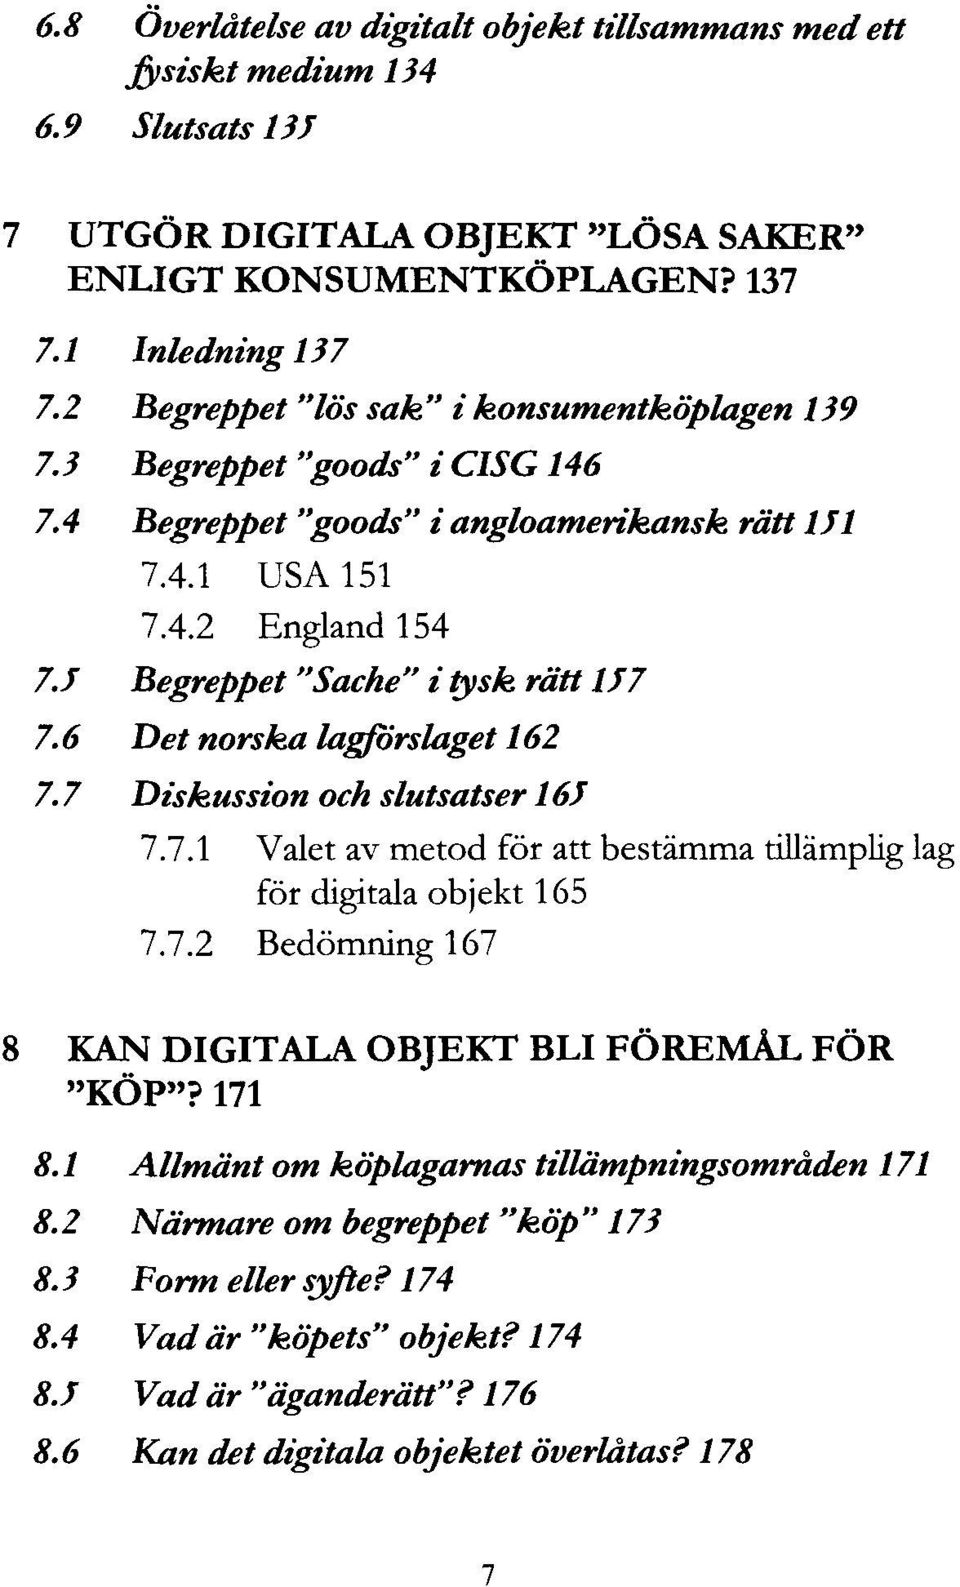 6 Det norska lagförslaget 162 7.7 Diskussion och slutsatser 16J 7.1 A Valet av metod för att bestämma tillämplig lag för digitala objekt 165 7.7.2 Bedömning 167 KAN DIGITALA OBJEKT BLI FÖREMÅL FÖR "KÖP"?